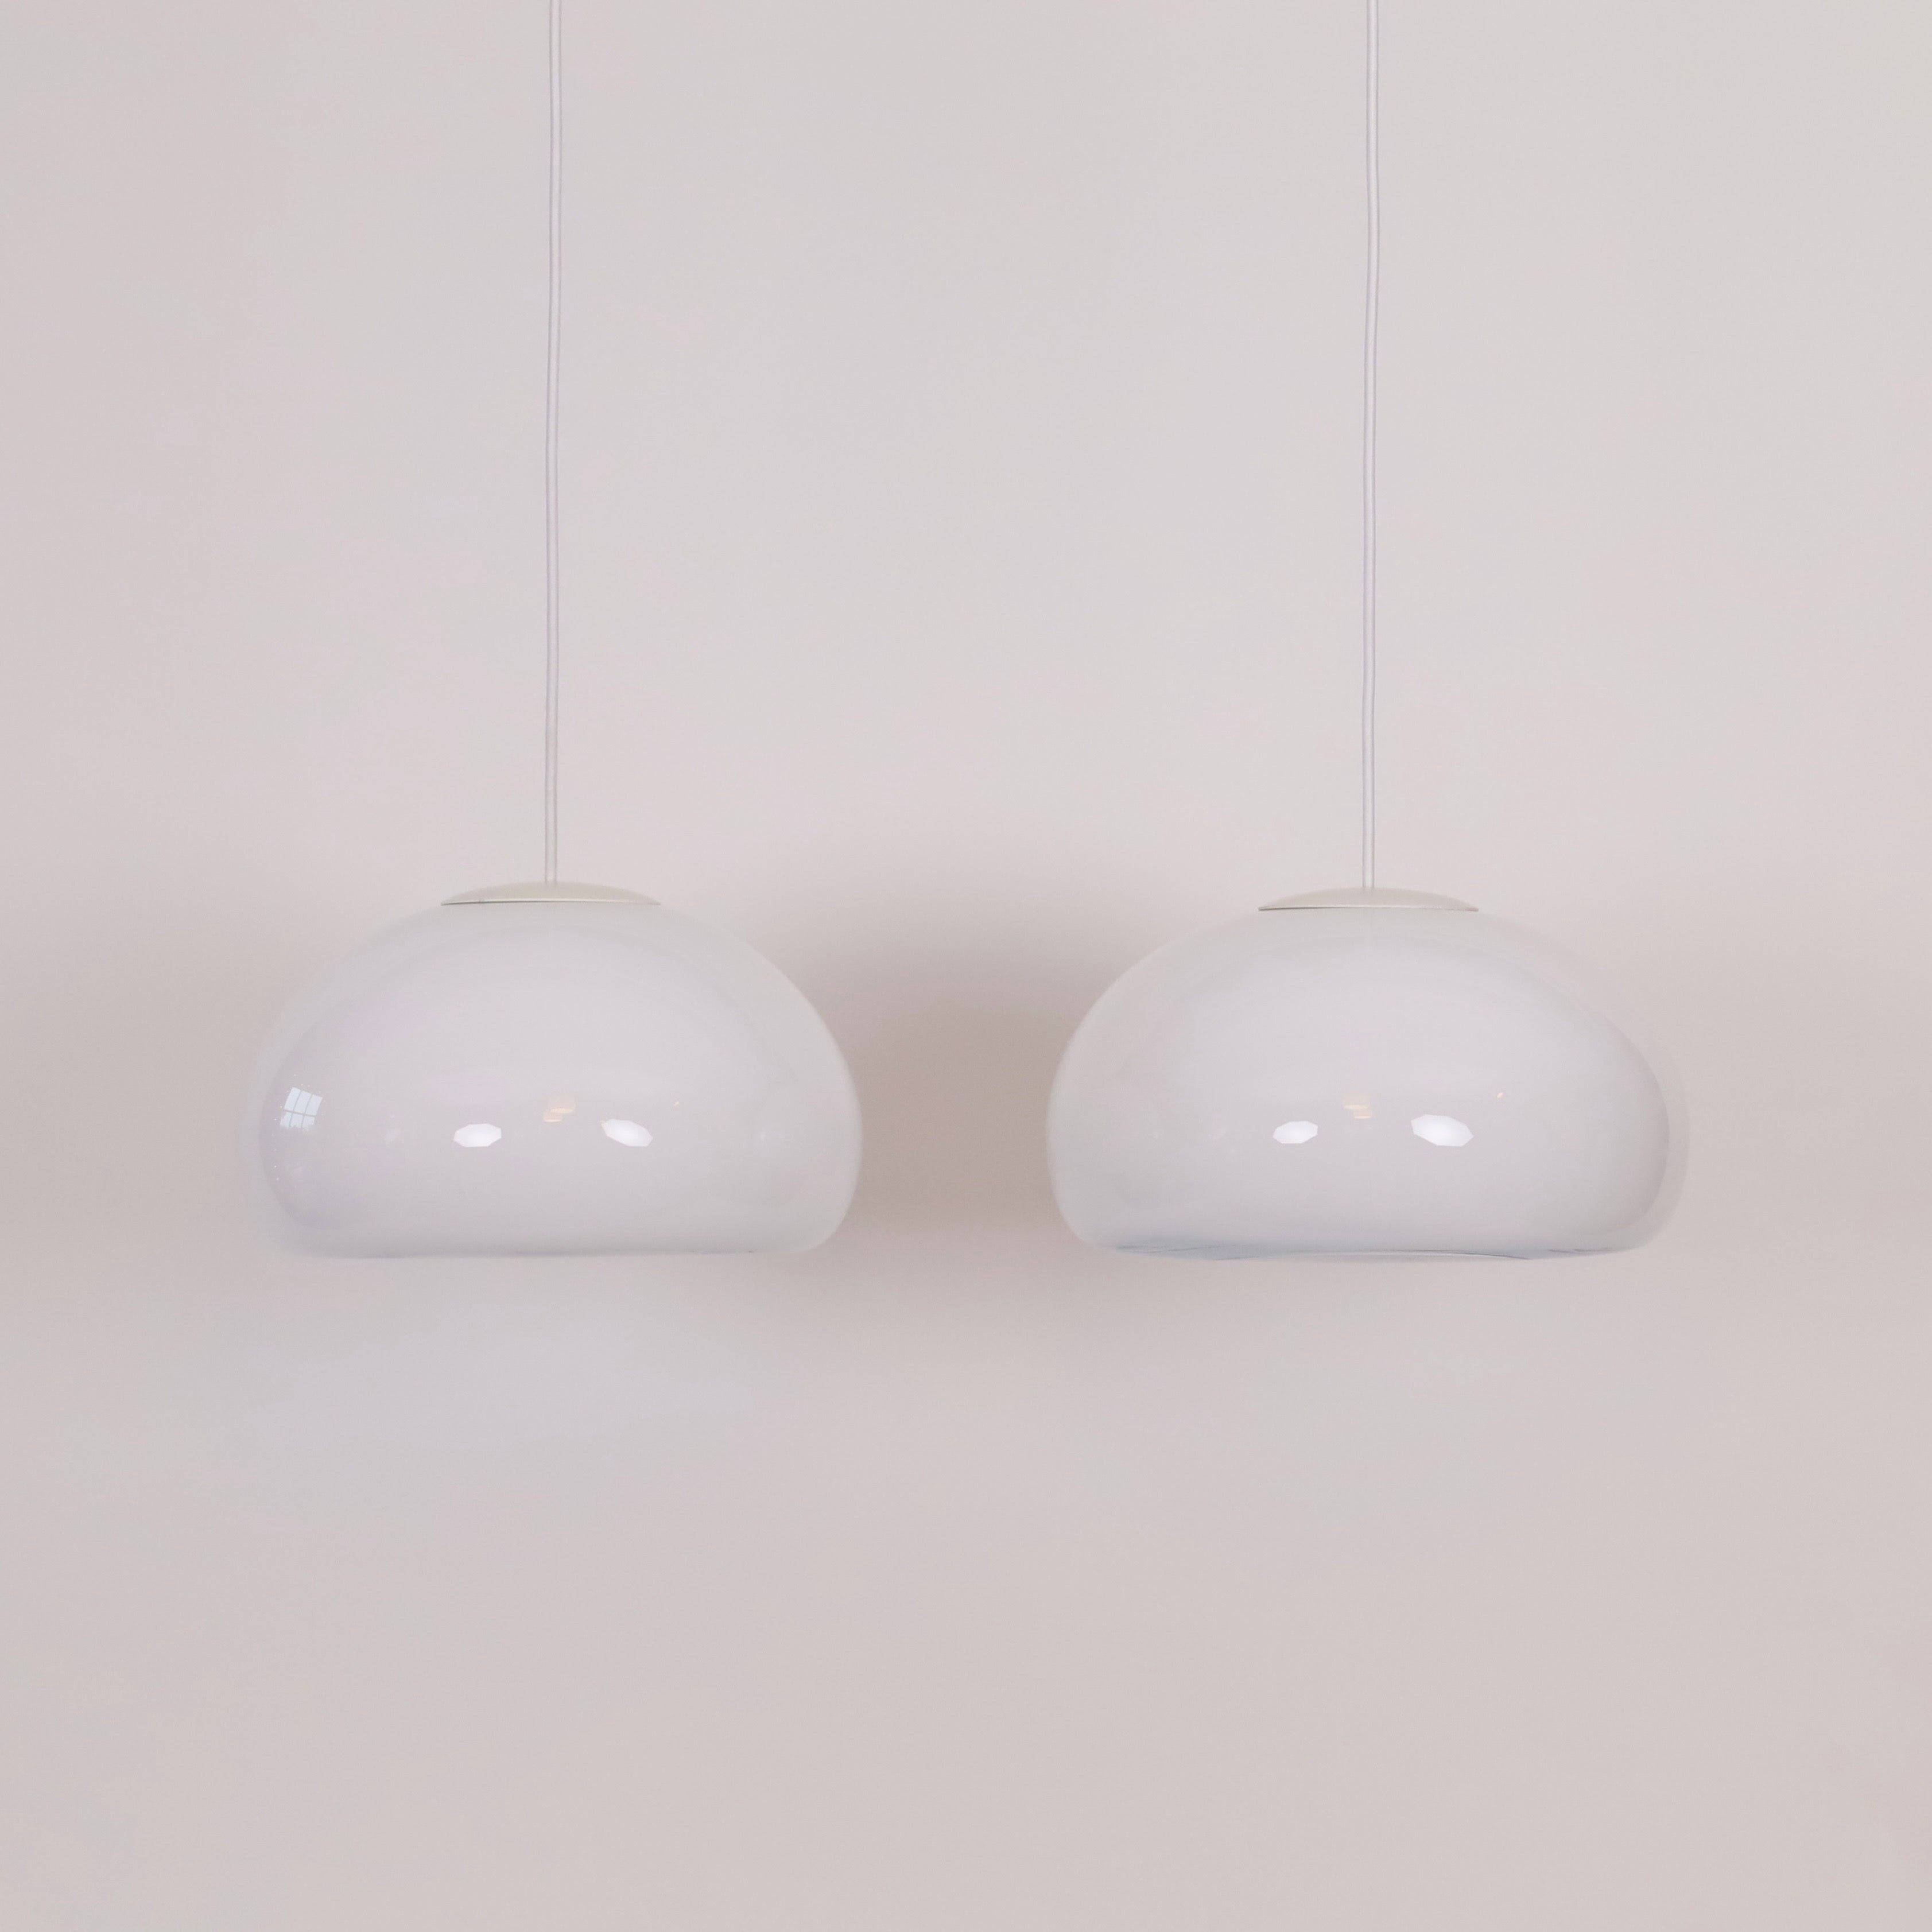 Ensemble de lampes suspendues en verre opale blanc, conçues par Per Lütken pour le danois Holmegaard Glasværk en 1983. C'est pour cette raison que ce style est appelé 